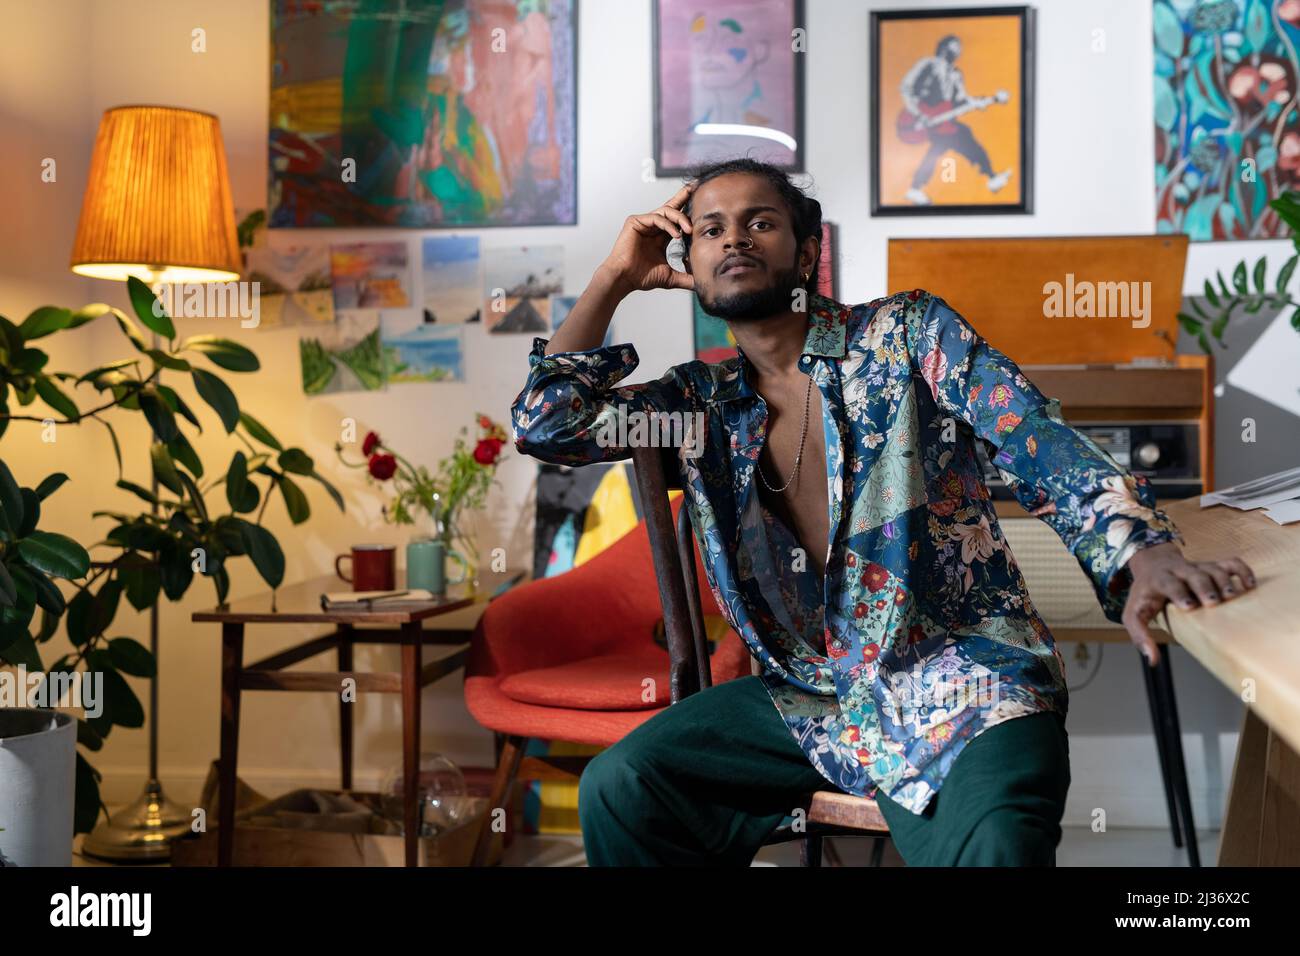 Porträt eines hübschen jungen indischen Mannes mit buntem Hemd, der im Wohnzimmer sitzt, das mit Gemälden geschmückt ist Stockfoto